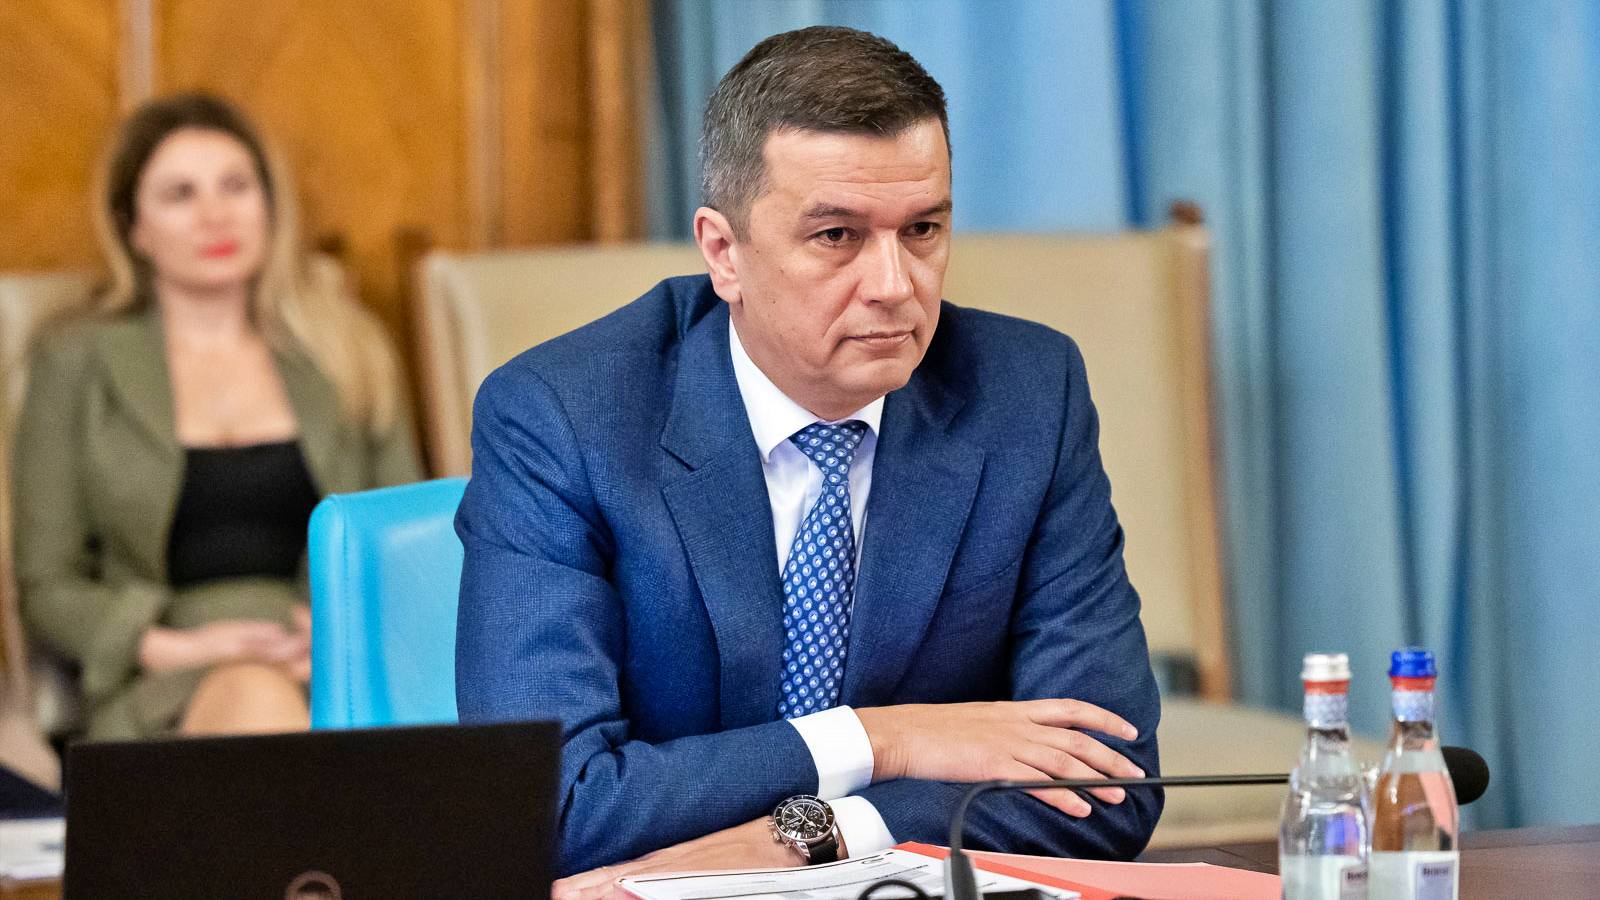 Sorin Grindeanu 3 Anunturi ULTIMA ORA Ministrului PSD Importanta MAXIMA Romania